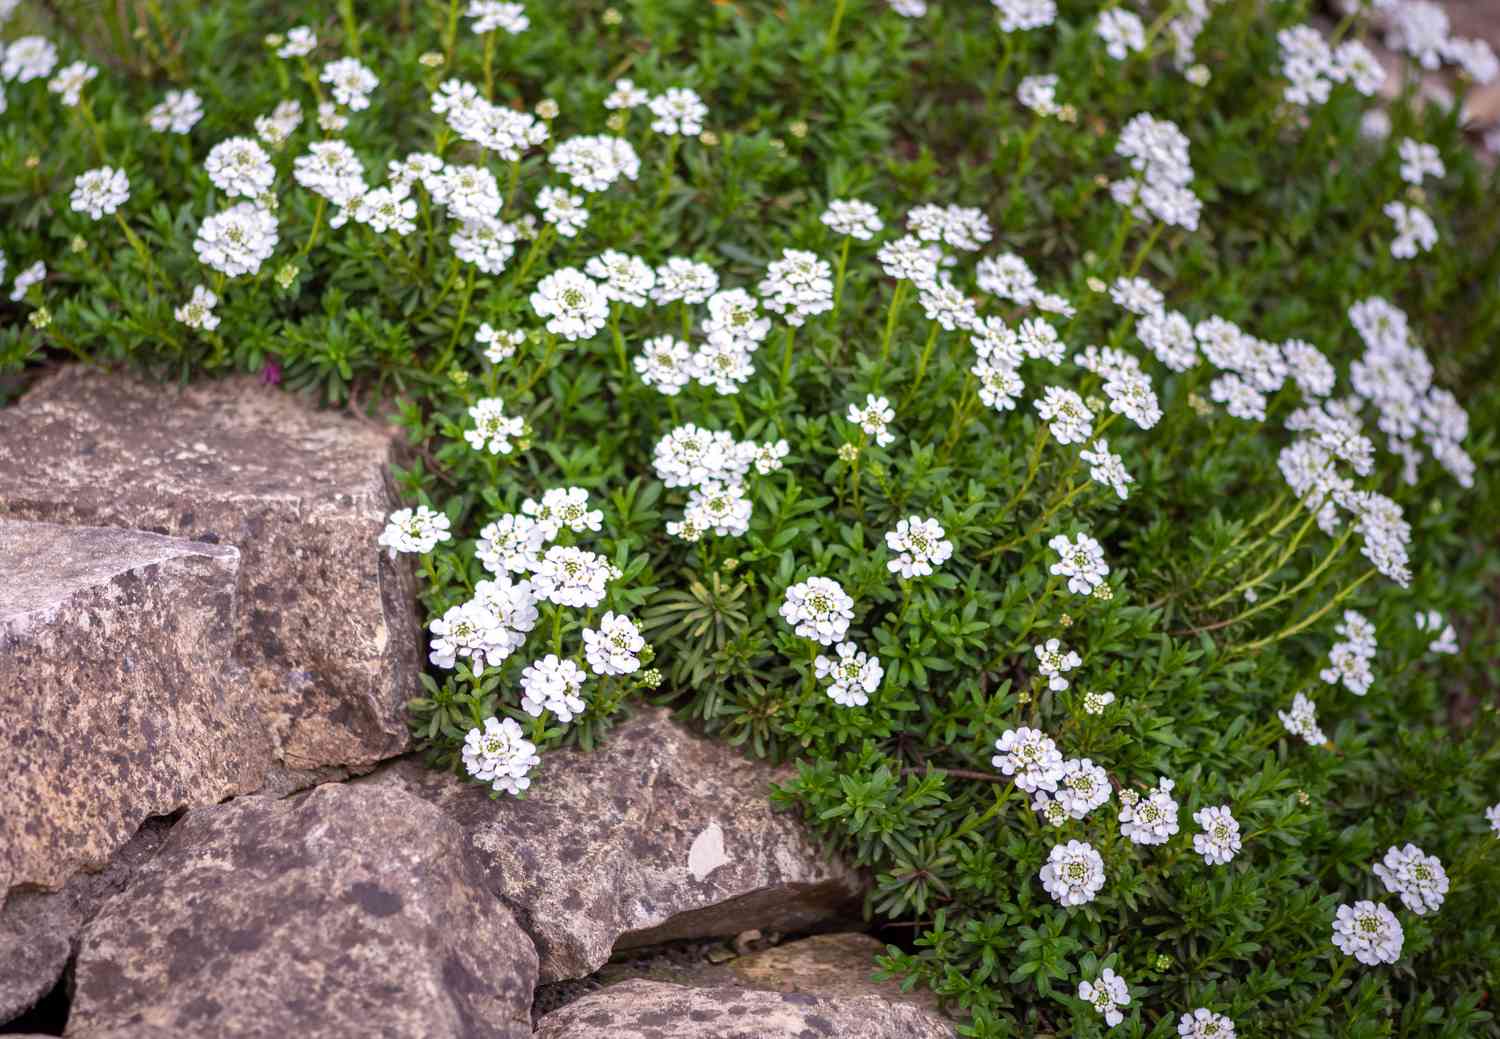 Candytuft-Pflanze mit kleinen weißen Blüten in der Nähe von Felsen